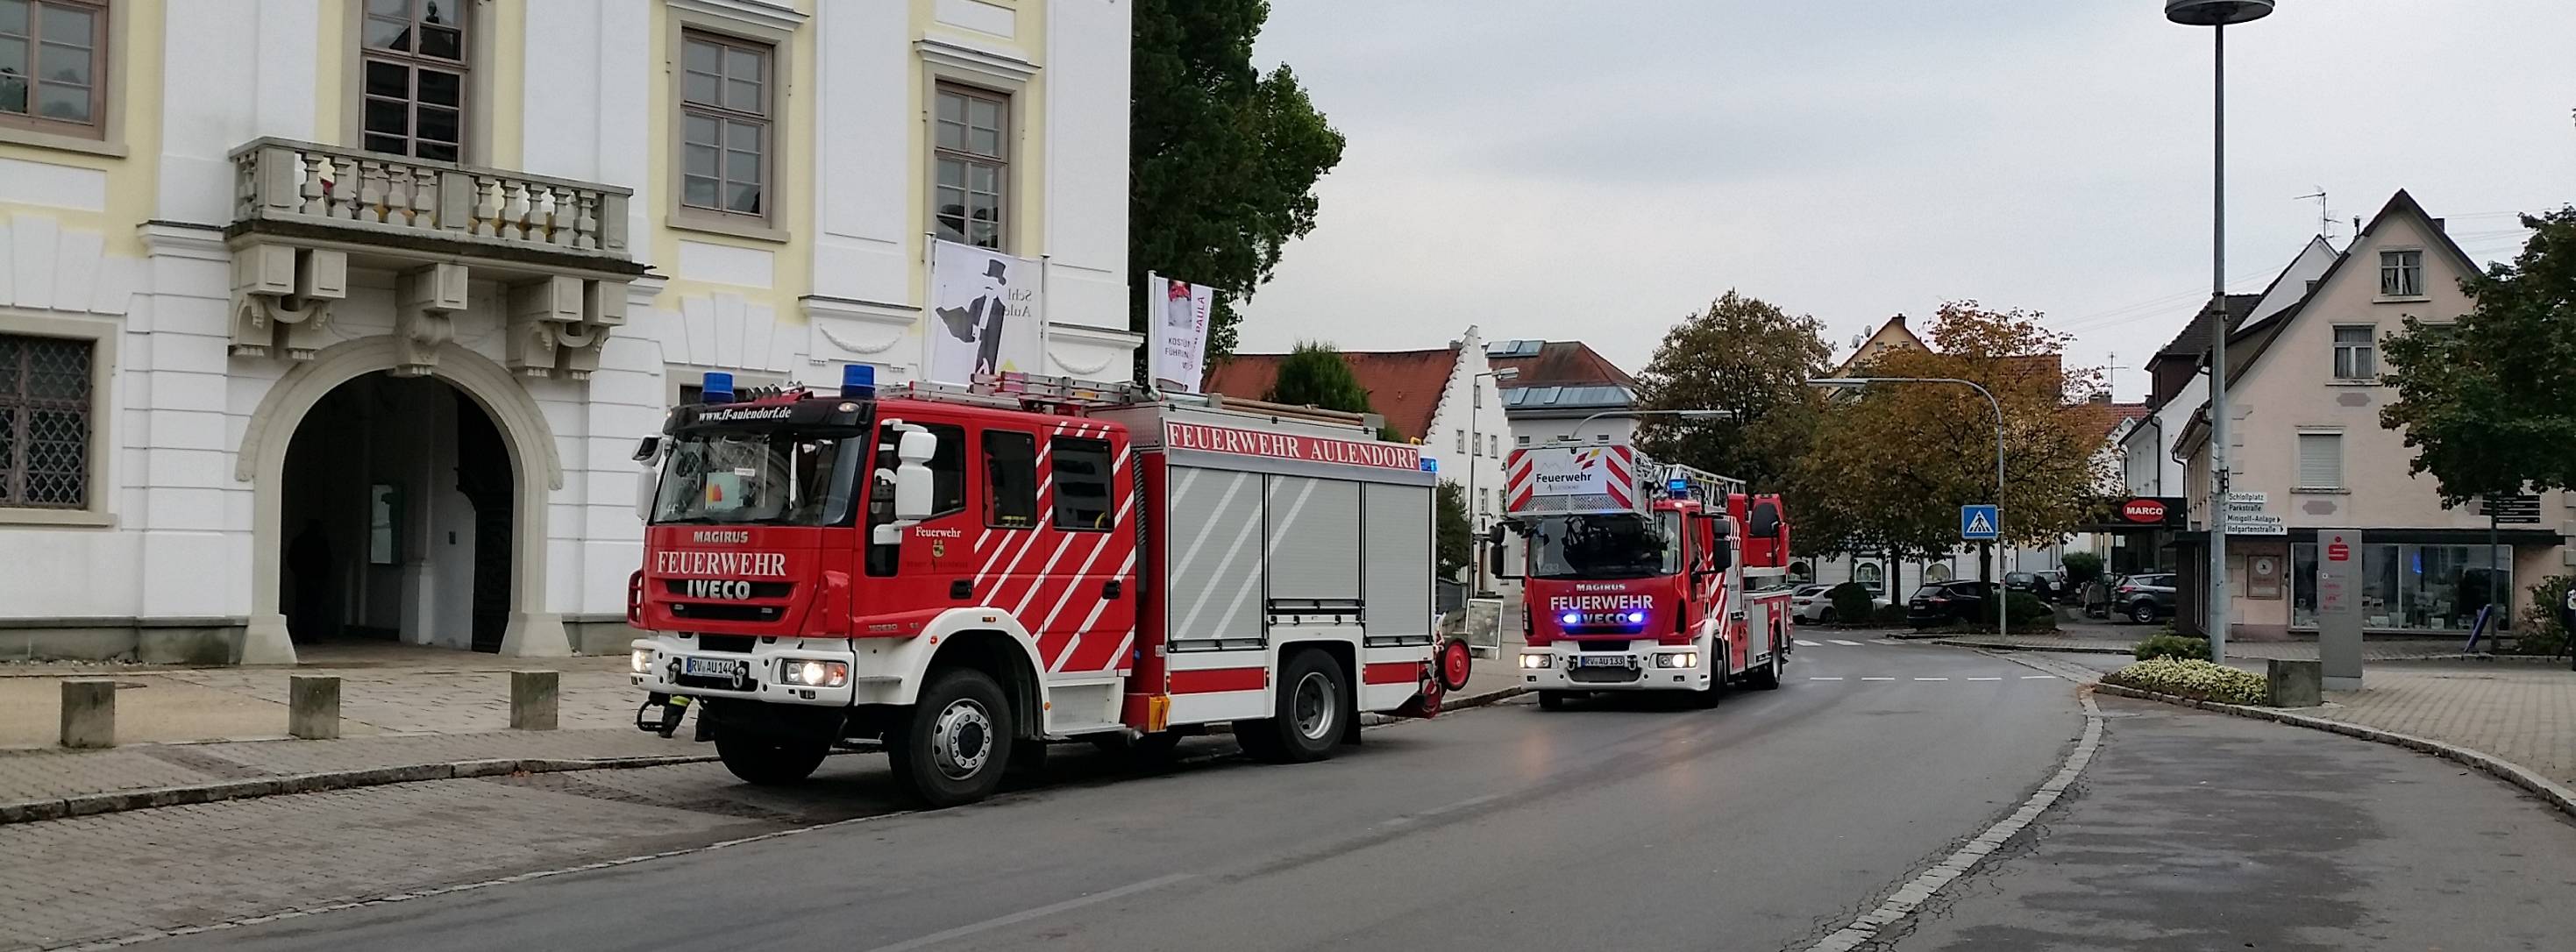 Feuerwehr Aulendorf